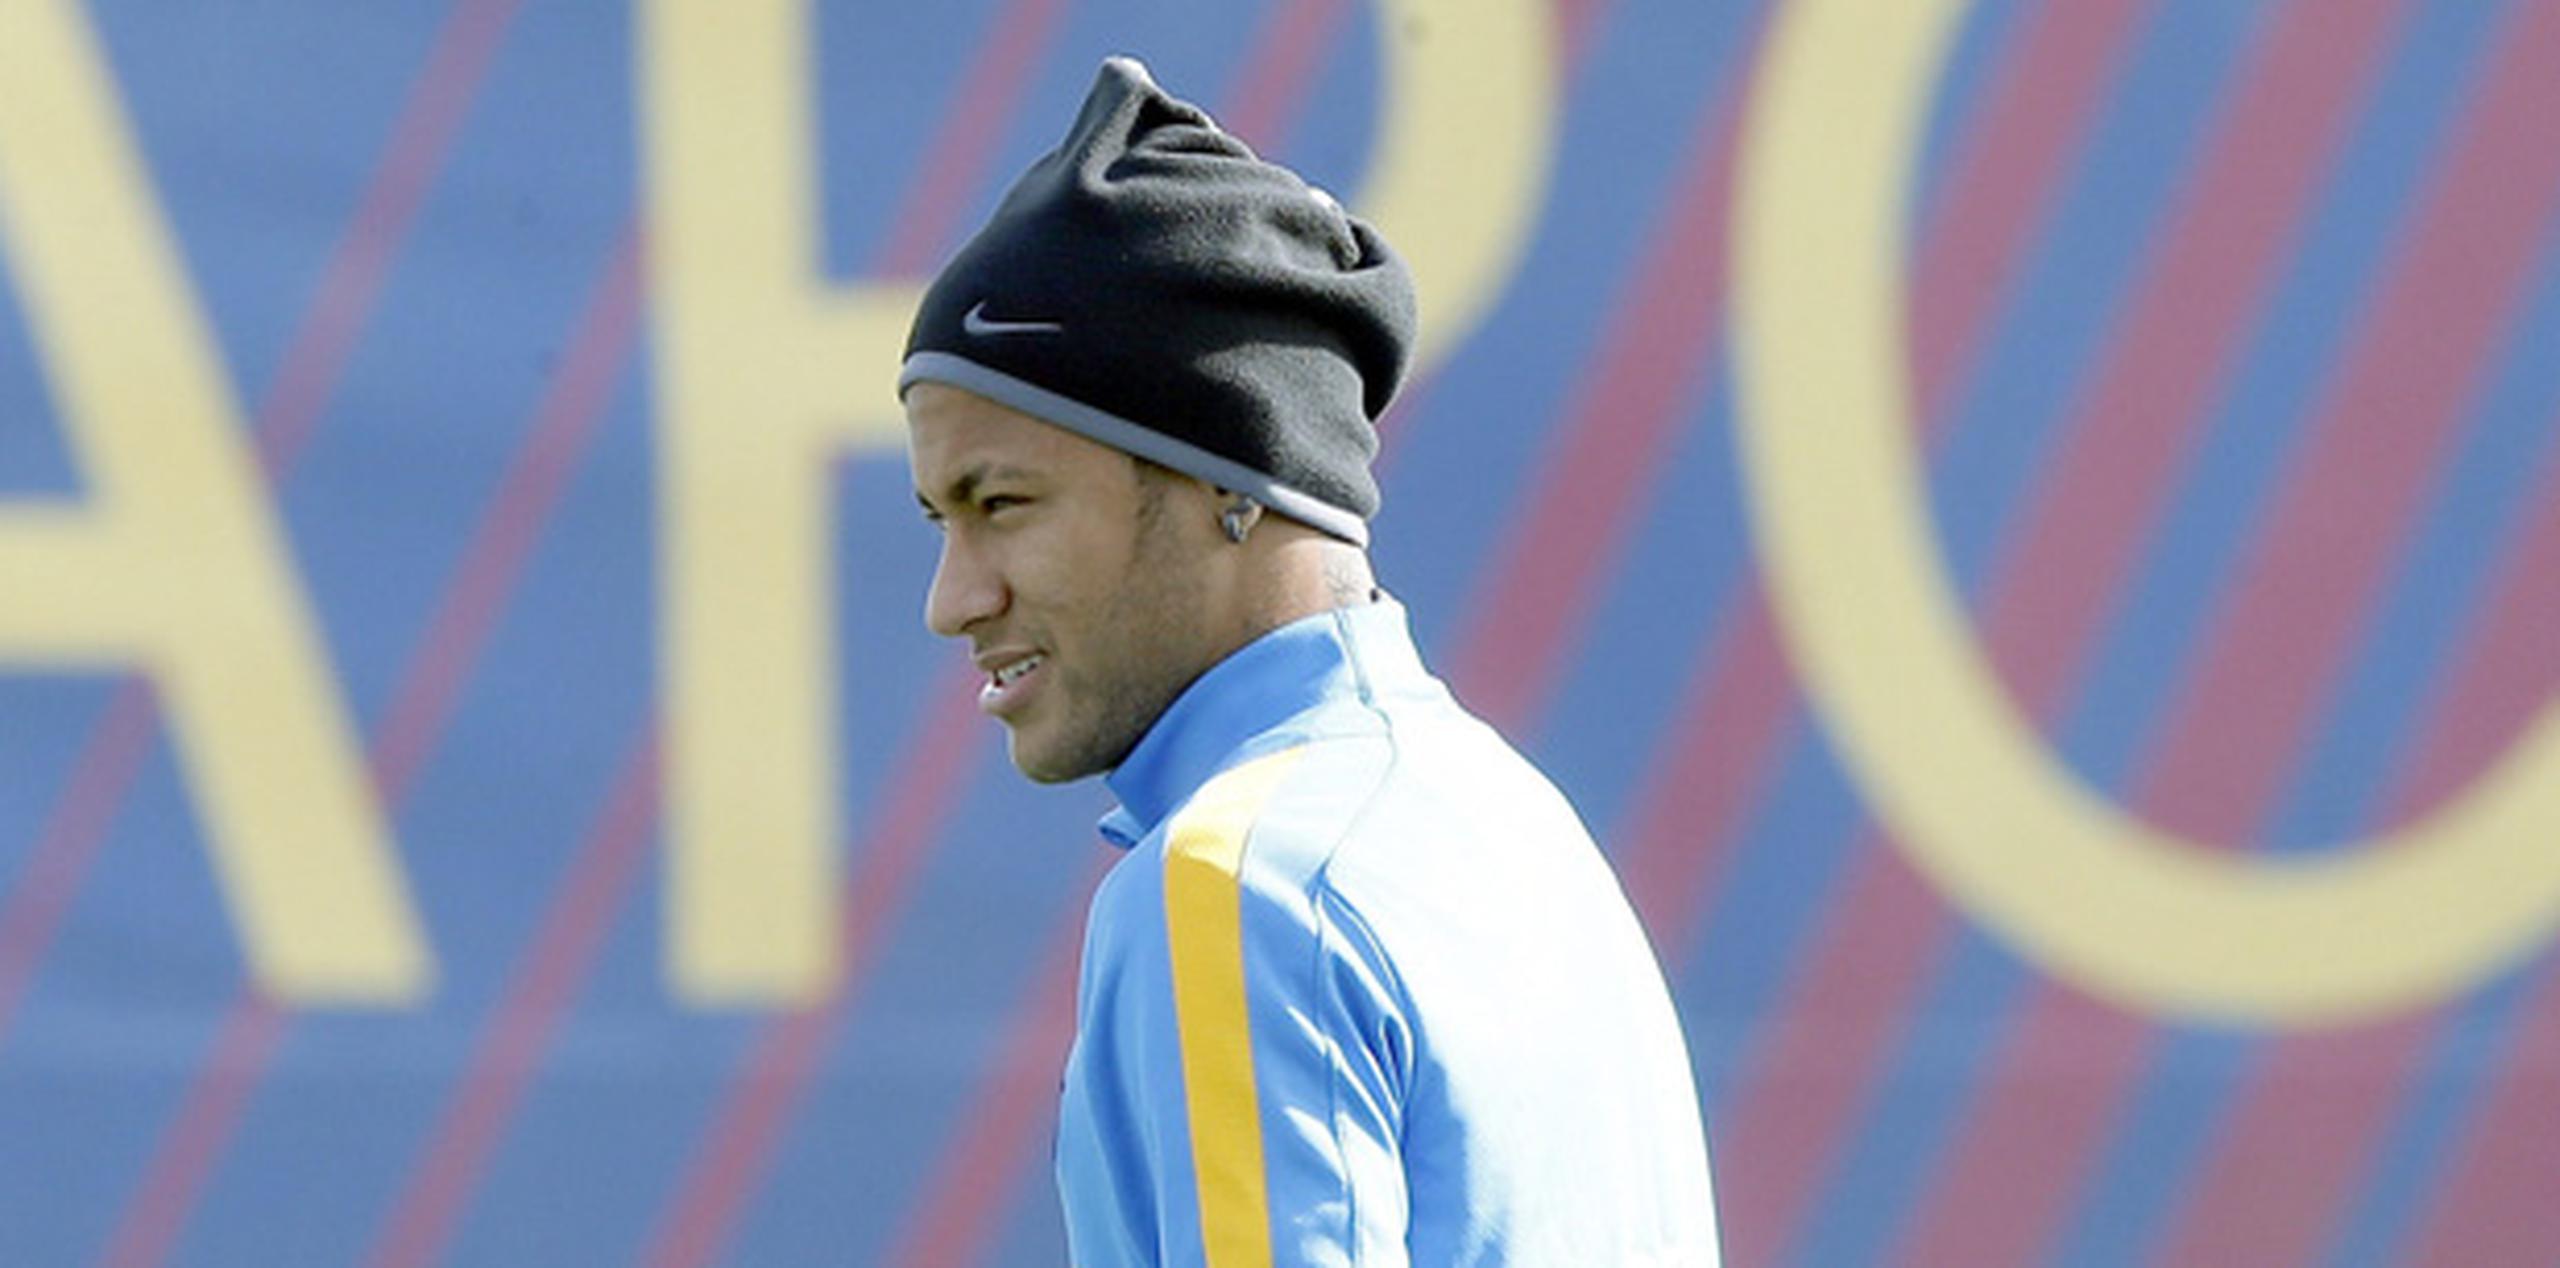 El Santos sostiene que el jugador y sus agentes violaron las condiciones del contrato de Neymar al iniciar negociaciones con Barcelona sin el consentimiento del club brasileño. (EFE)